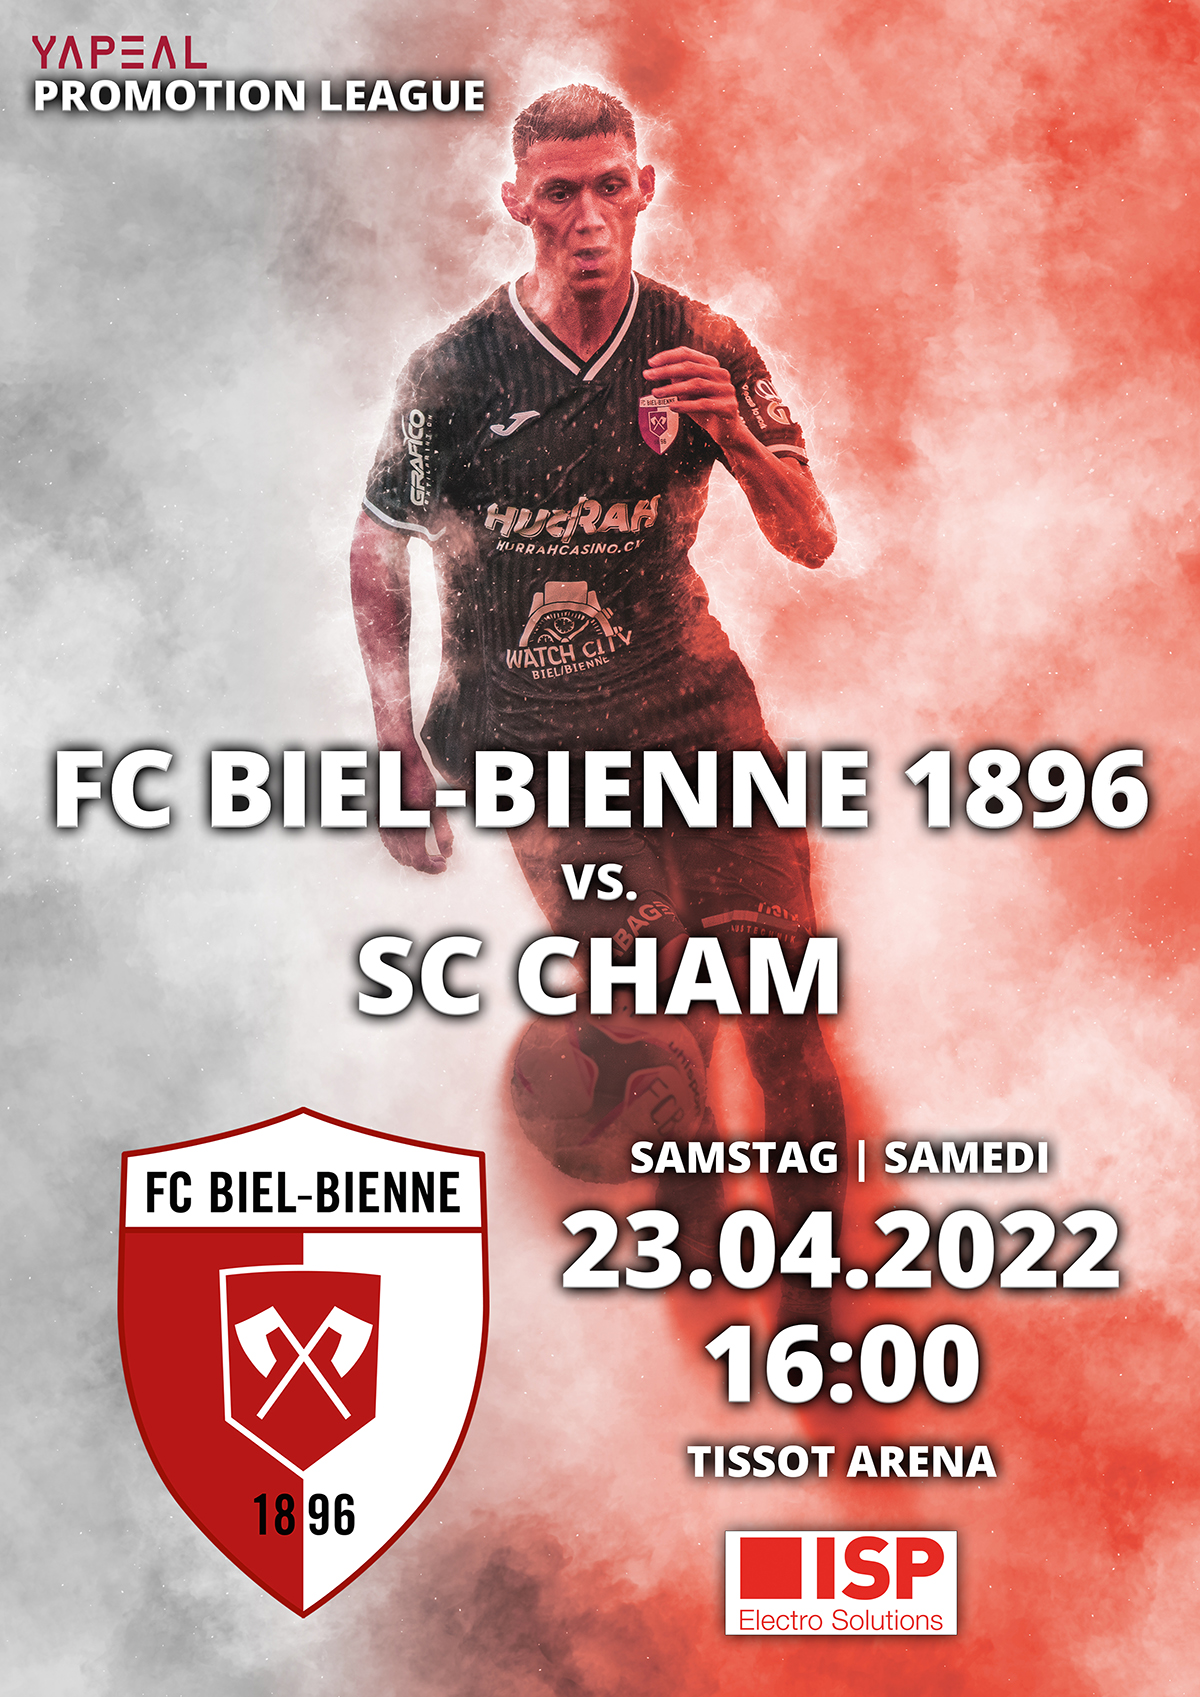 FC Biel-Bienne 1896 vs. SC Cham